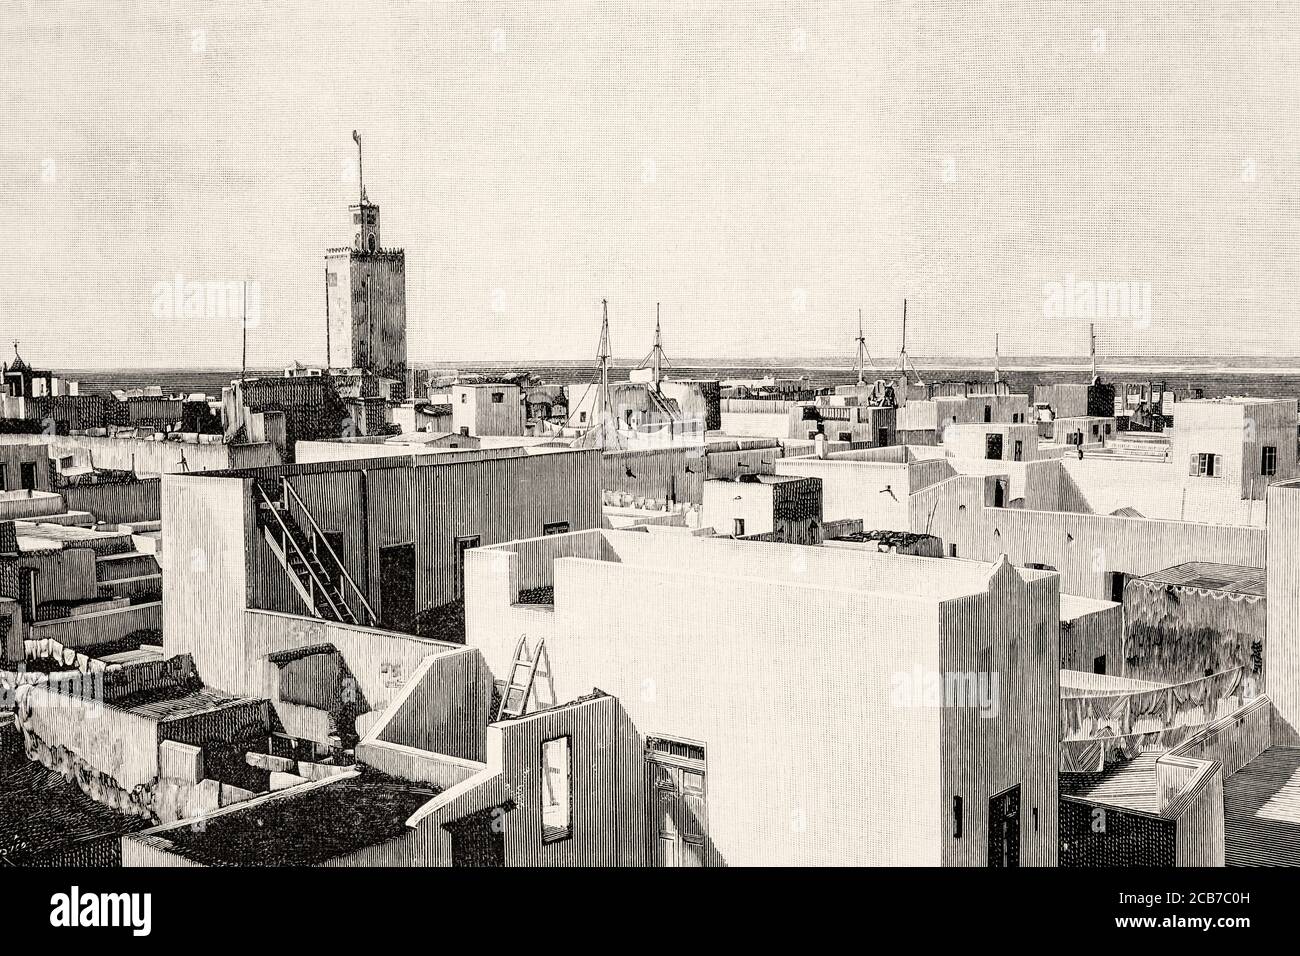 Vue panoramique générale de la ville marocaine de Mazagan au XIXe siècle, Maroc. Illustration gravée de la Ilustracion Española y Americana datant du XIXe siècle 1894 Banque D'Images